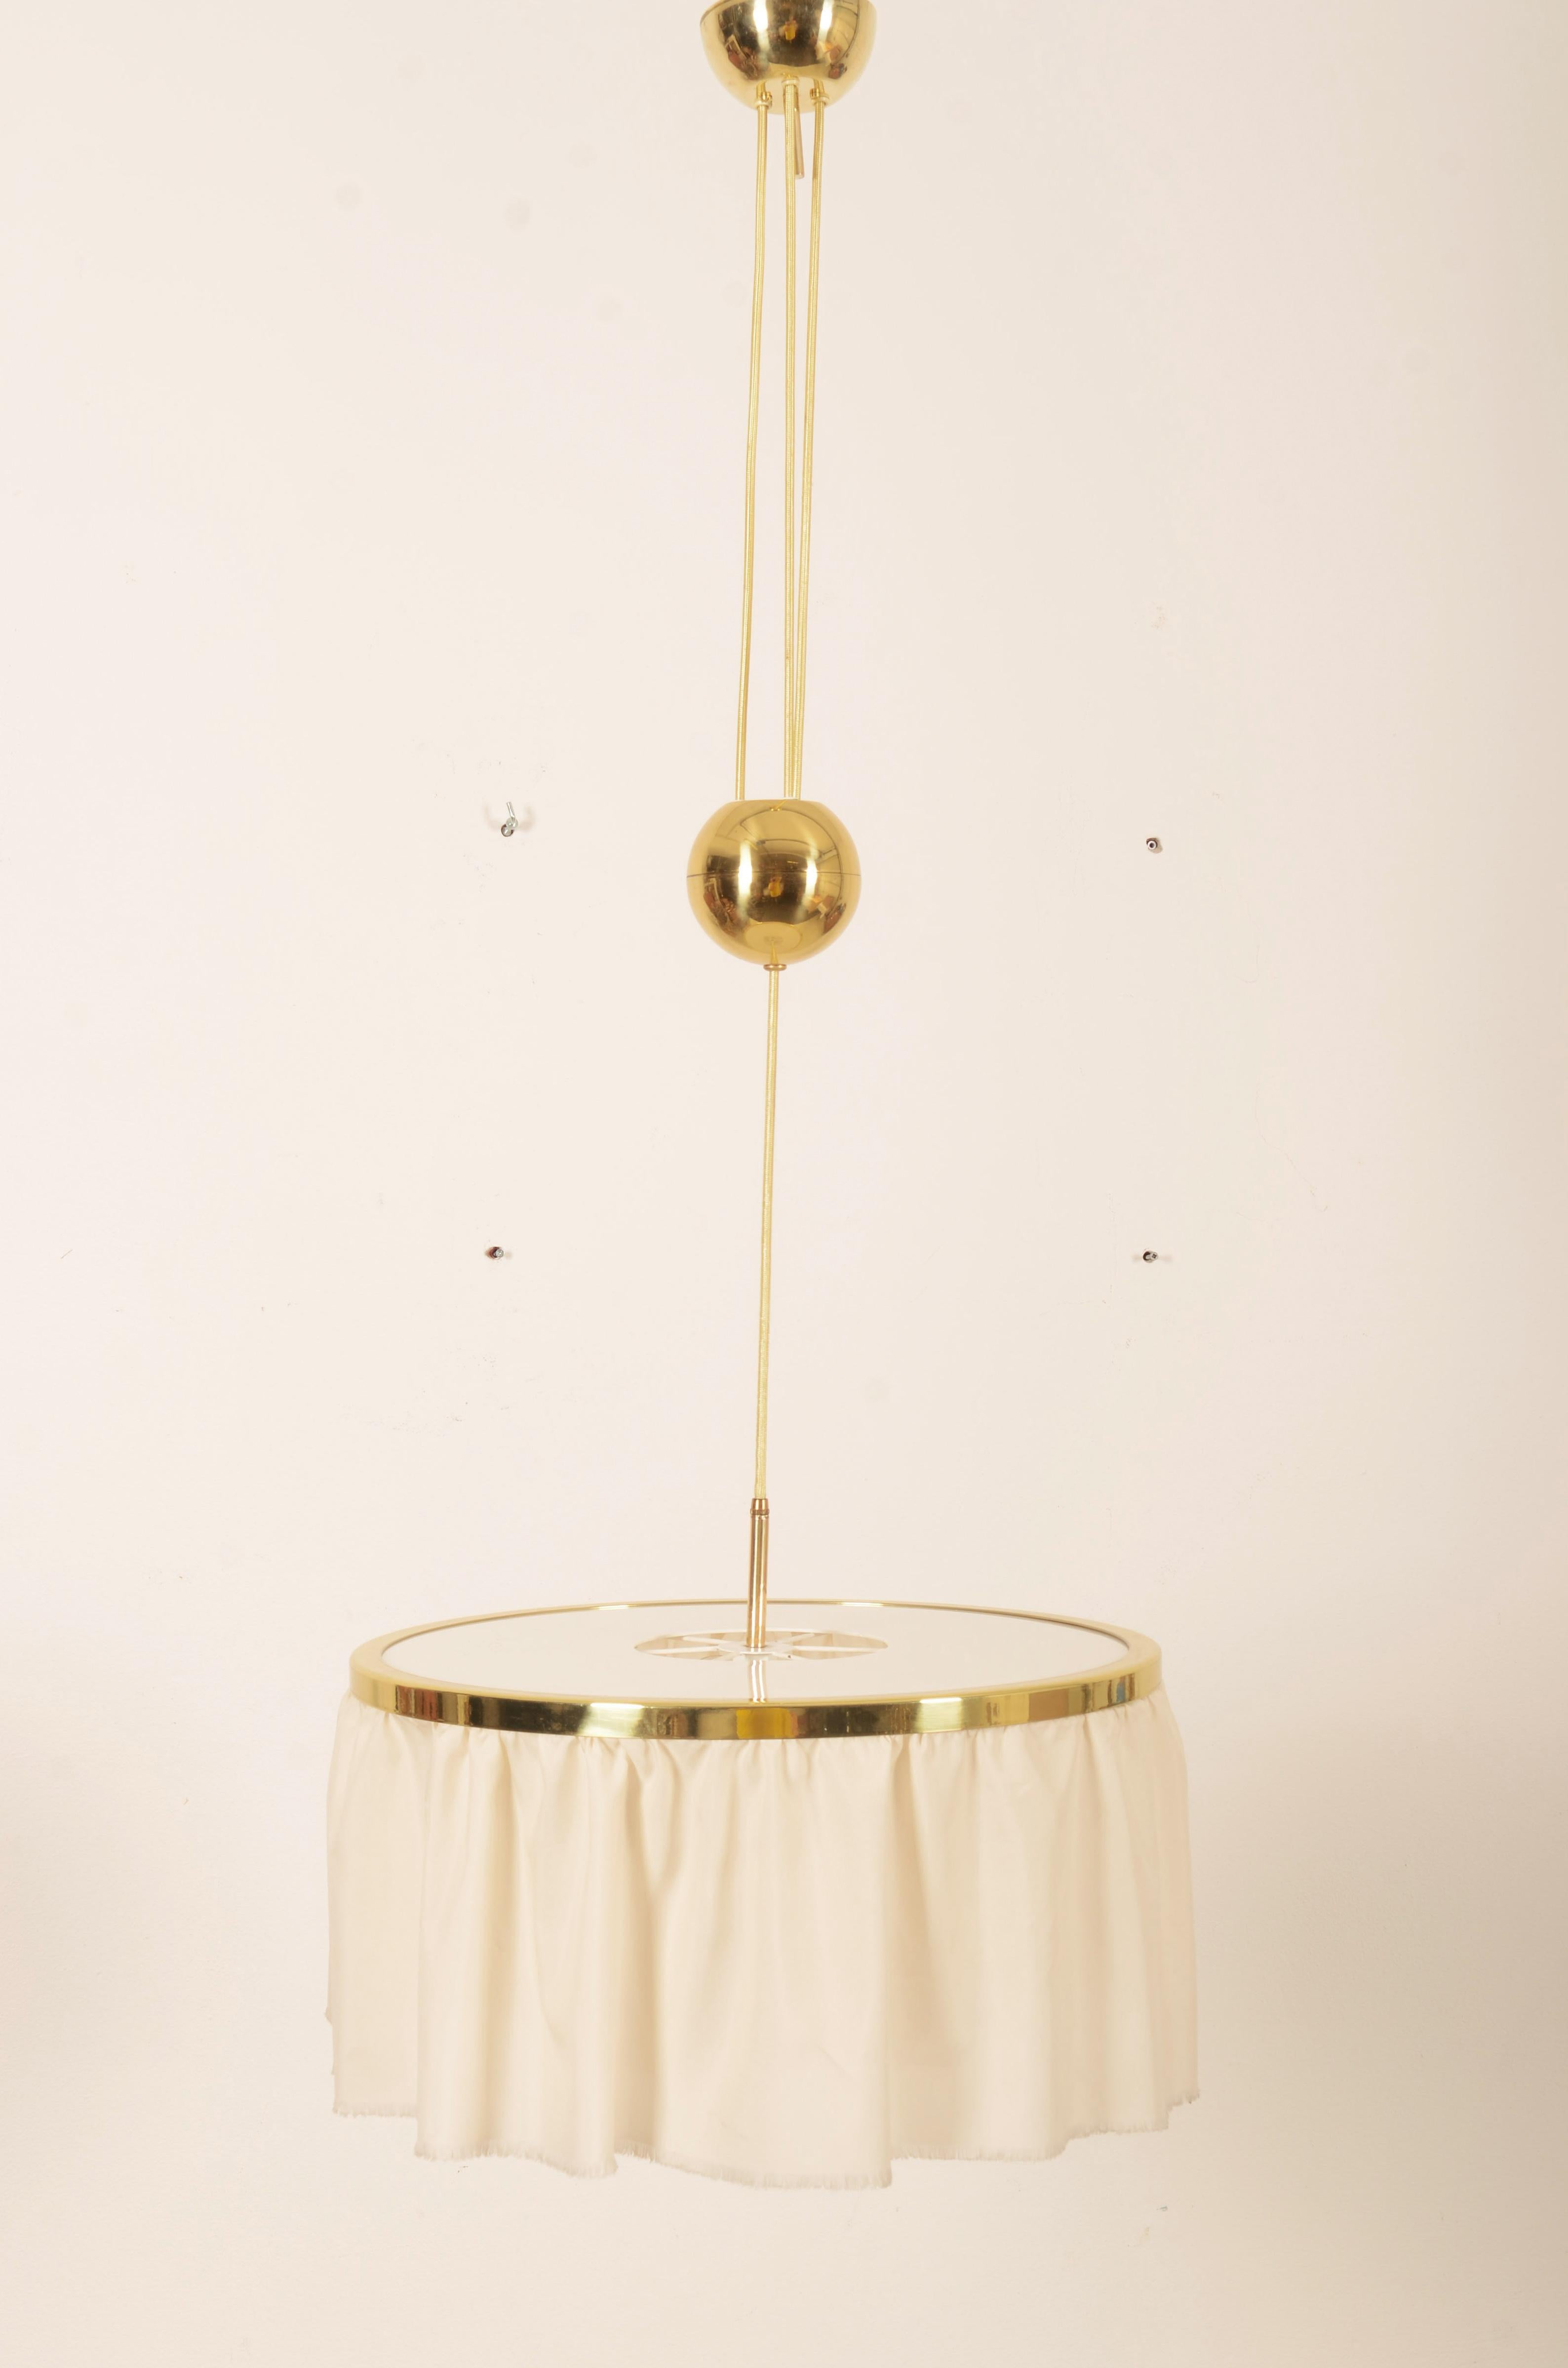 Lampe suspendue à contrepoids en laiton, réglable en hauteur, par J.T. Kalmar fabriqué au milieu du siècle dernier dans les années 1950 et conçu par Adolf Loos. Équipé de trois prises E27. La lampe est entièrement restaurée avec un nouveau système